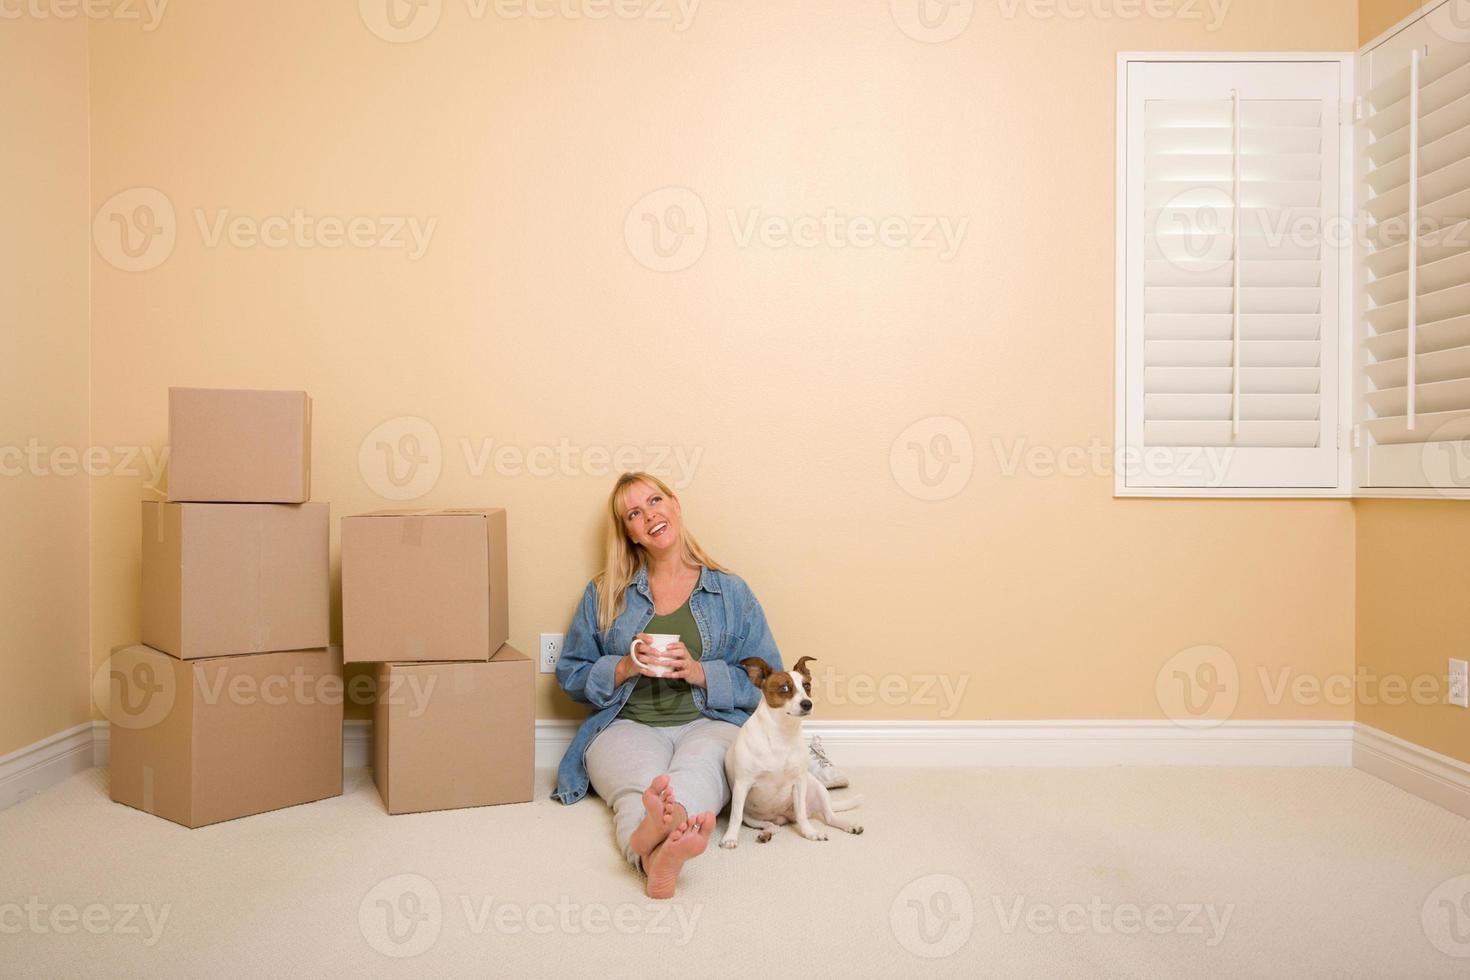 Relajante mujer y perro junto a cajas en el piso foto